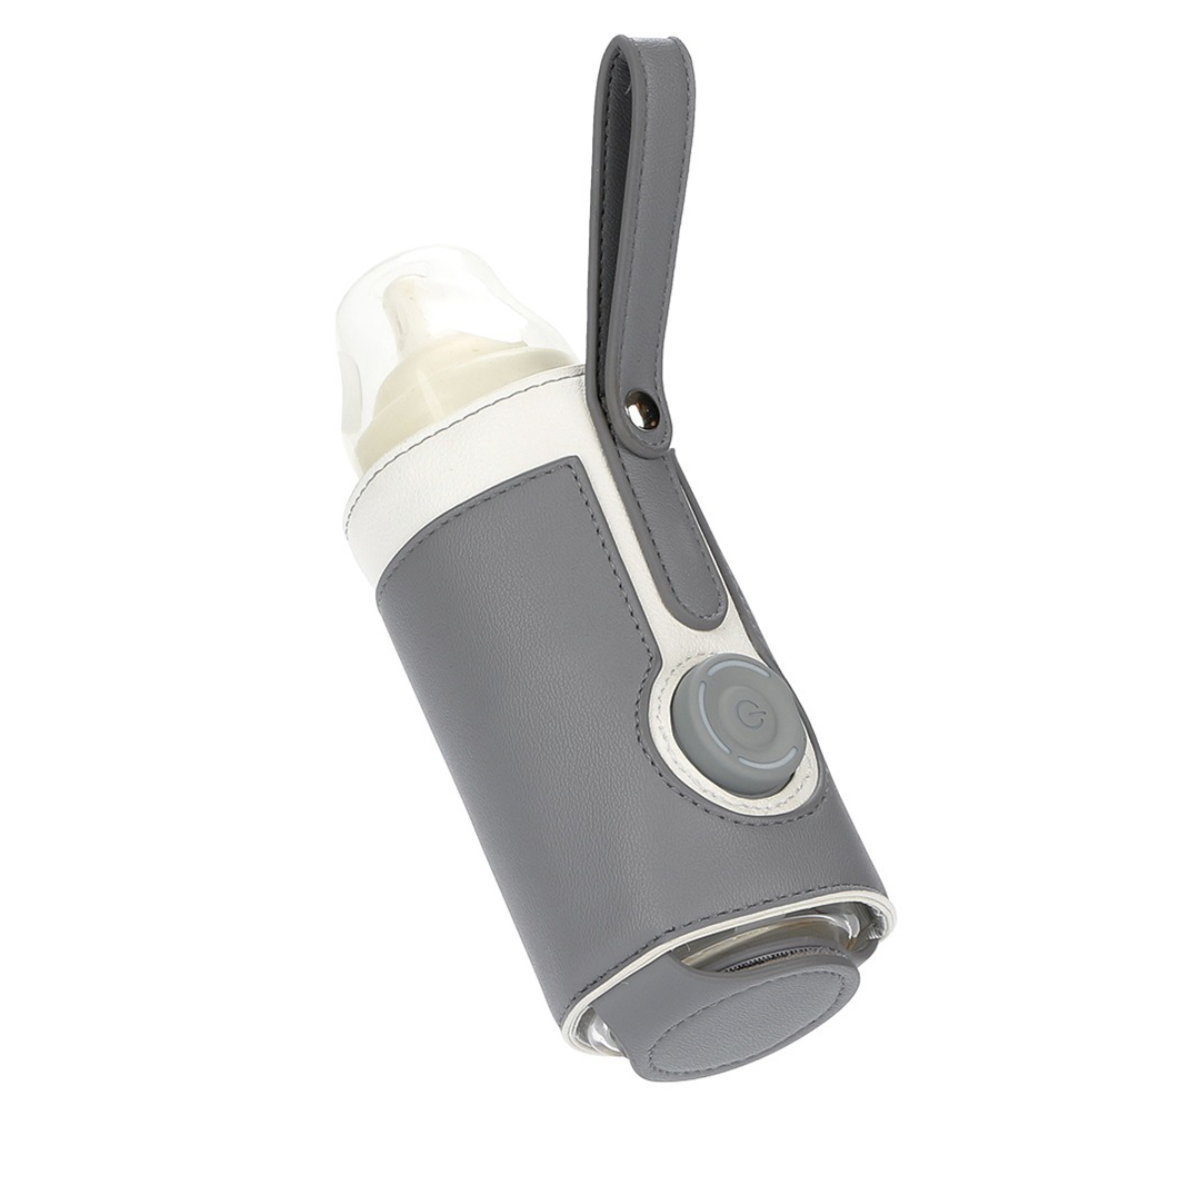 UWOT Smart Thermal Bottle Cover: sicher&kontrollierbar, Grau einfach&praktisch-5V Babykostwärmer Tragbar&elegant